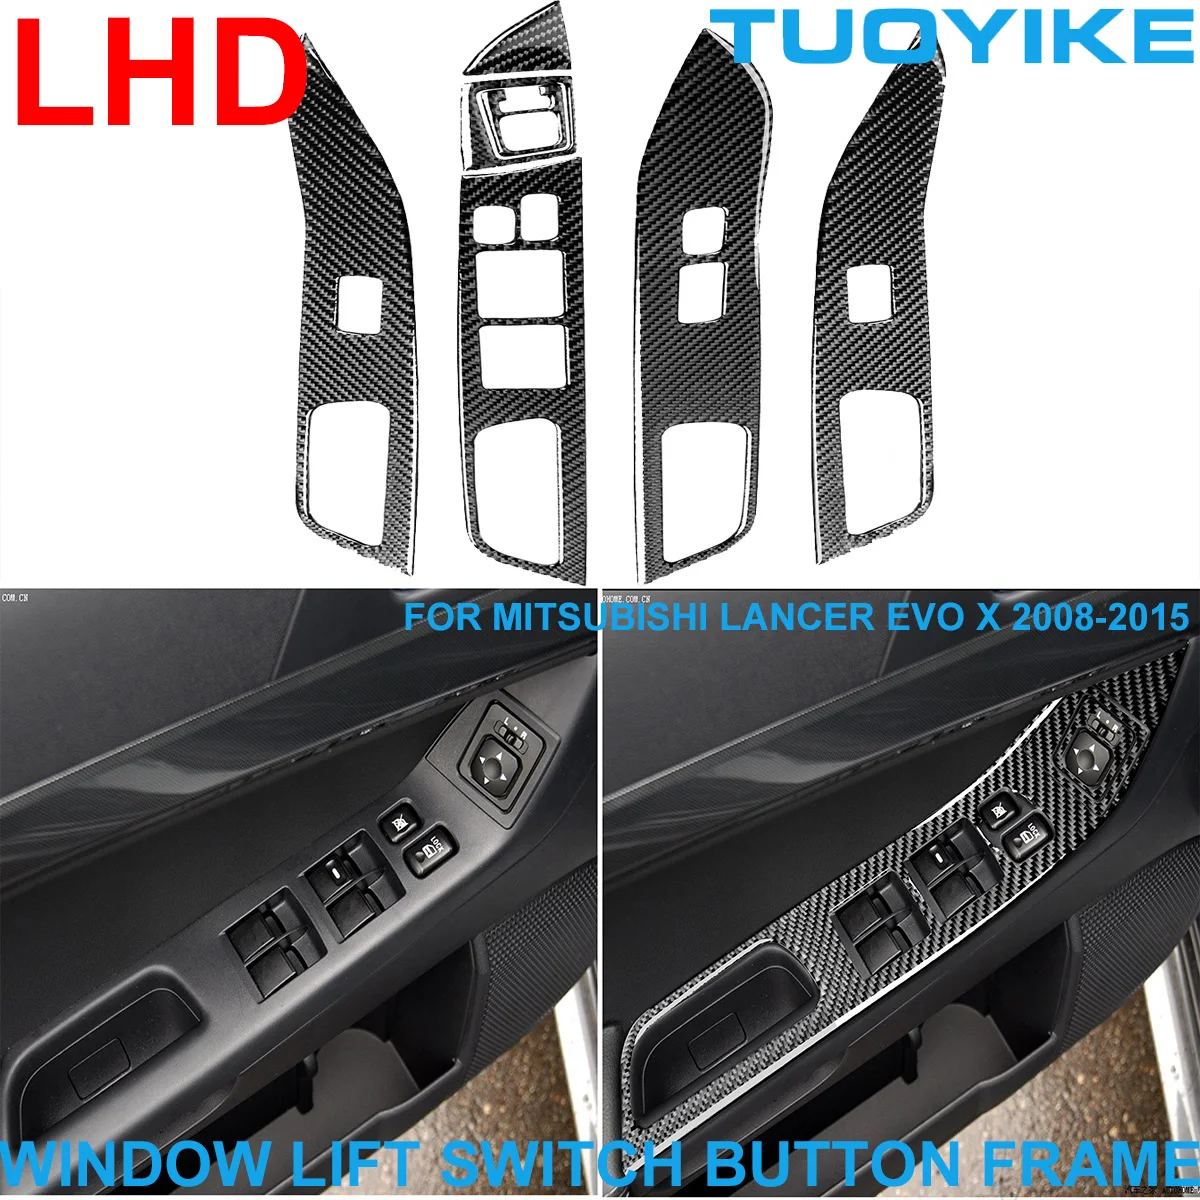 

LHD RHD Стайлинг автомобиля из углеродного волокна переключатель Панель рамка отделка наклейка для Mitsubishi Lancer EVO X GTS ED ES 08-15